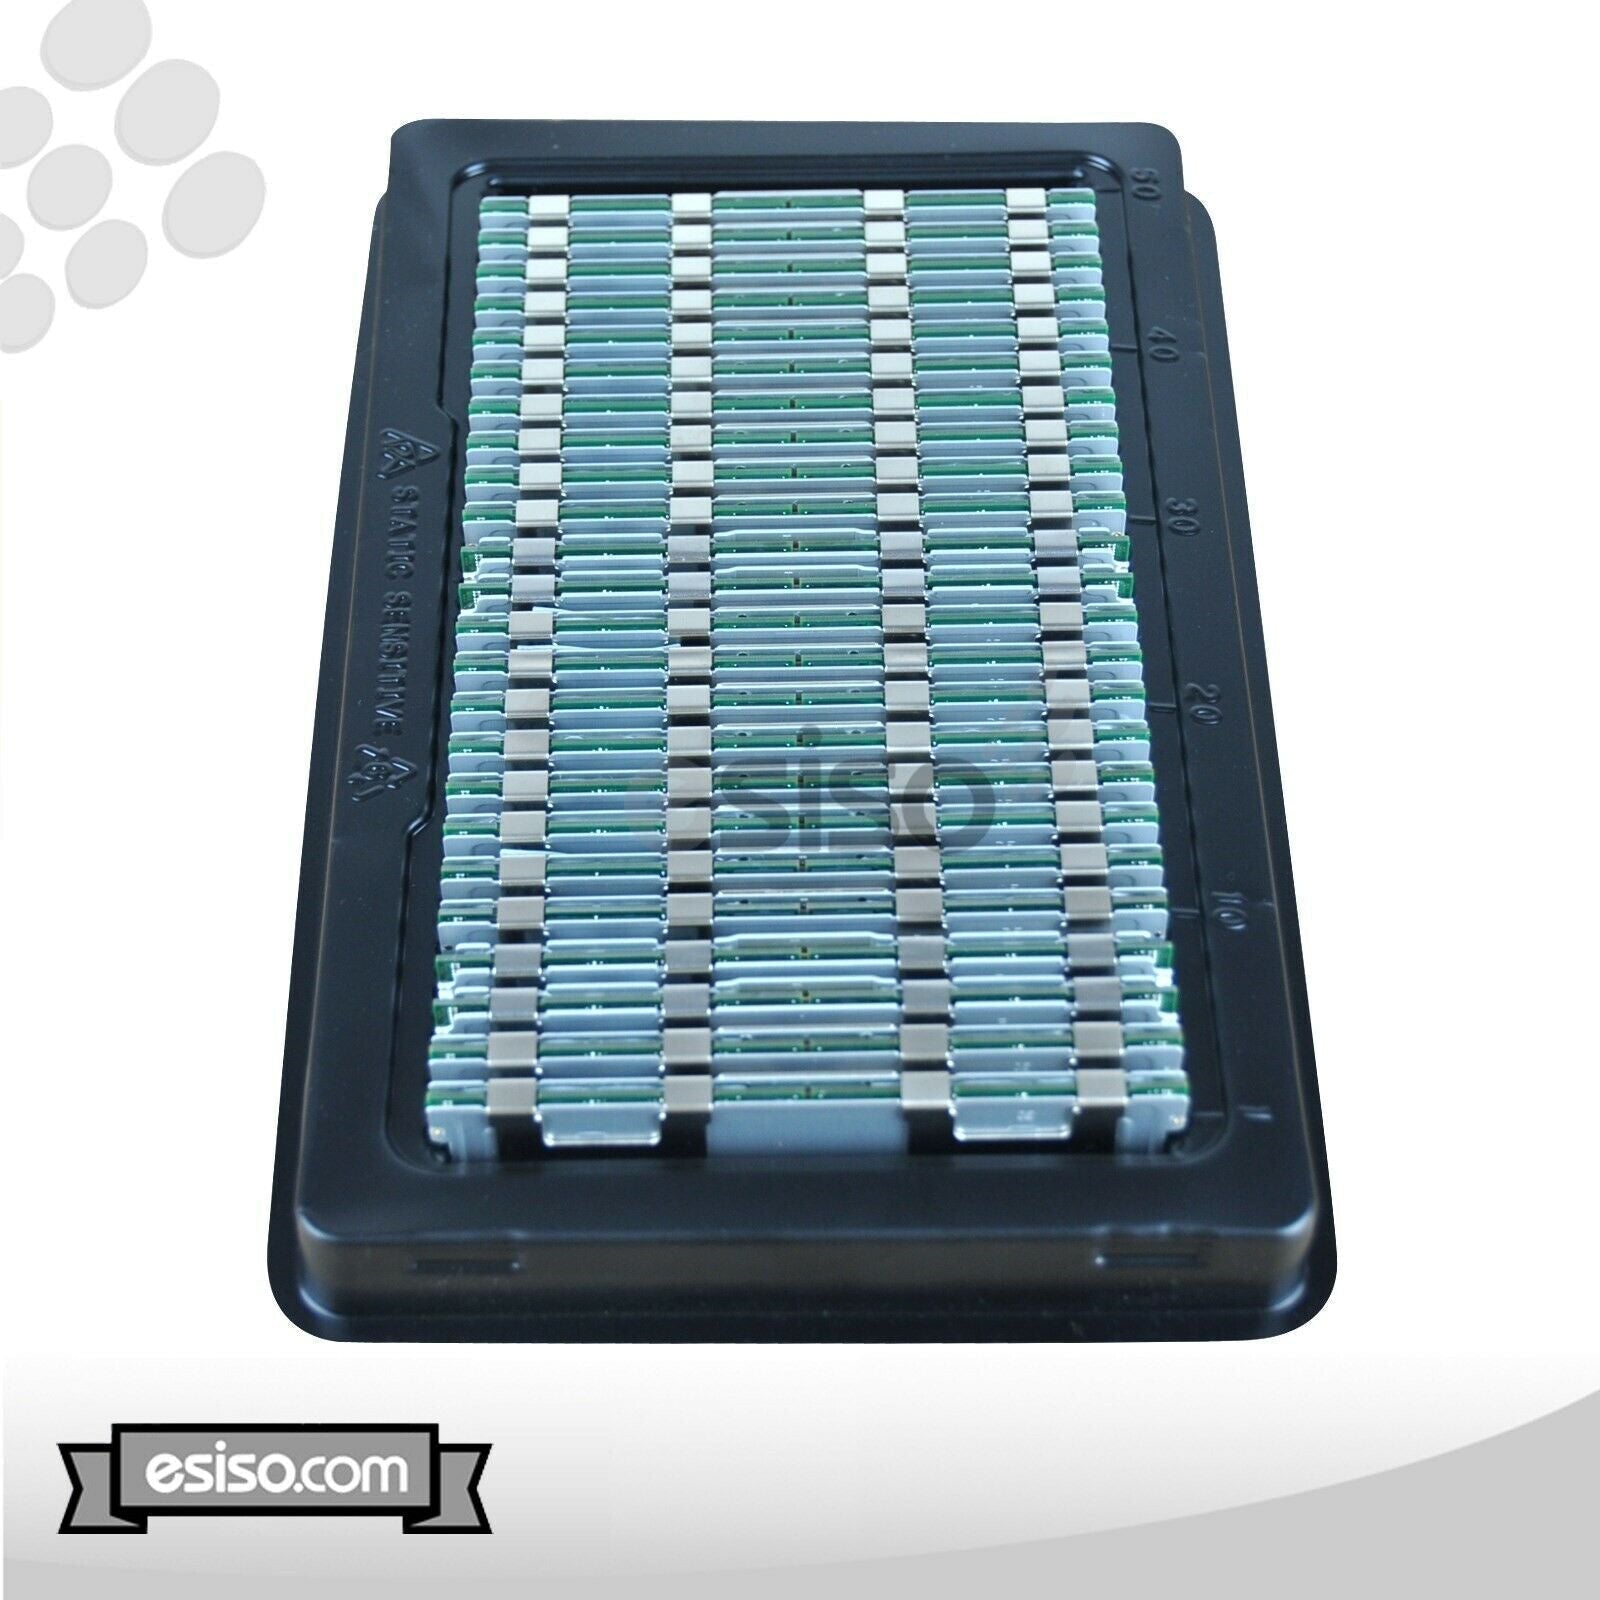 64GB (4x 16GB) 10600R RAM MEMORY MODULE FOR HP DL180 DL360 DL380 DL580 G6 G7